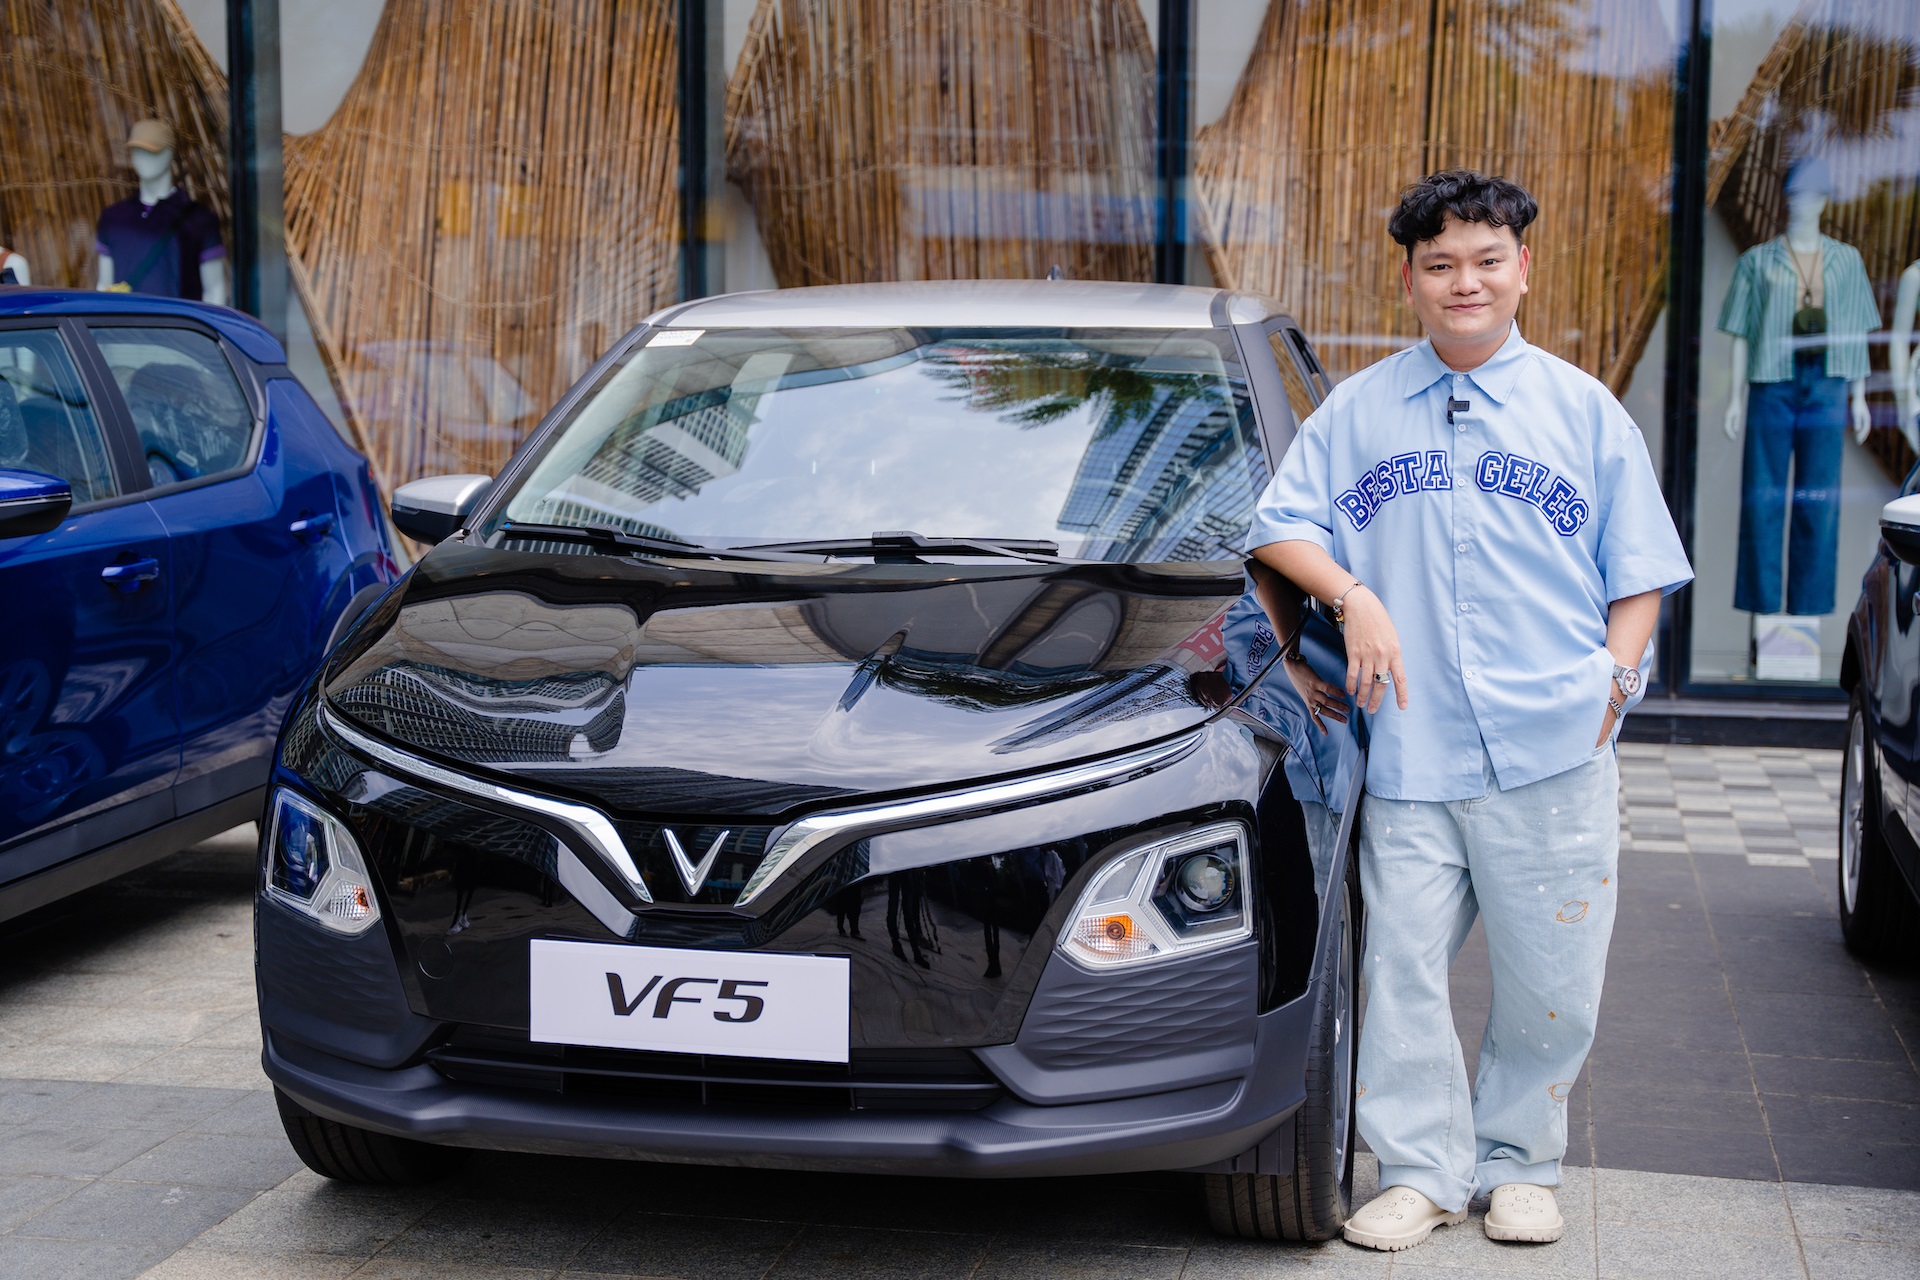 Trong phân khúc xe hạng A tầm giá dưới 600 triệu đồng, VF 5 Plus là mẫu xe dễ tiếp cận với nhiều khách hàng trẻ tuổi.